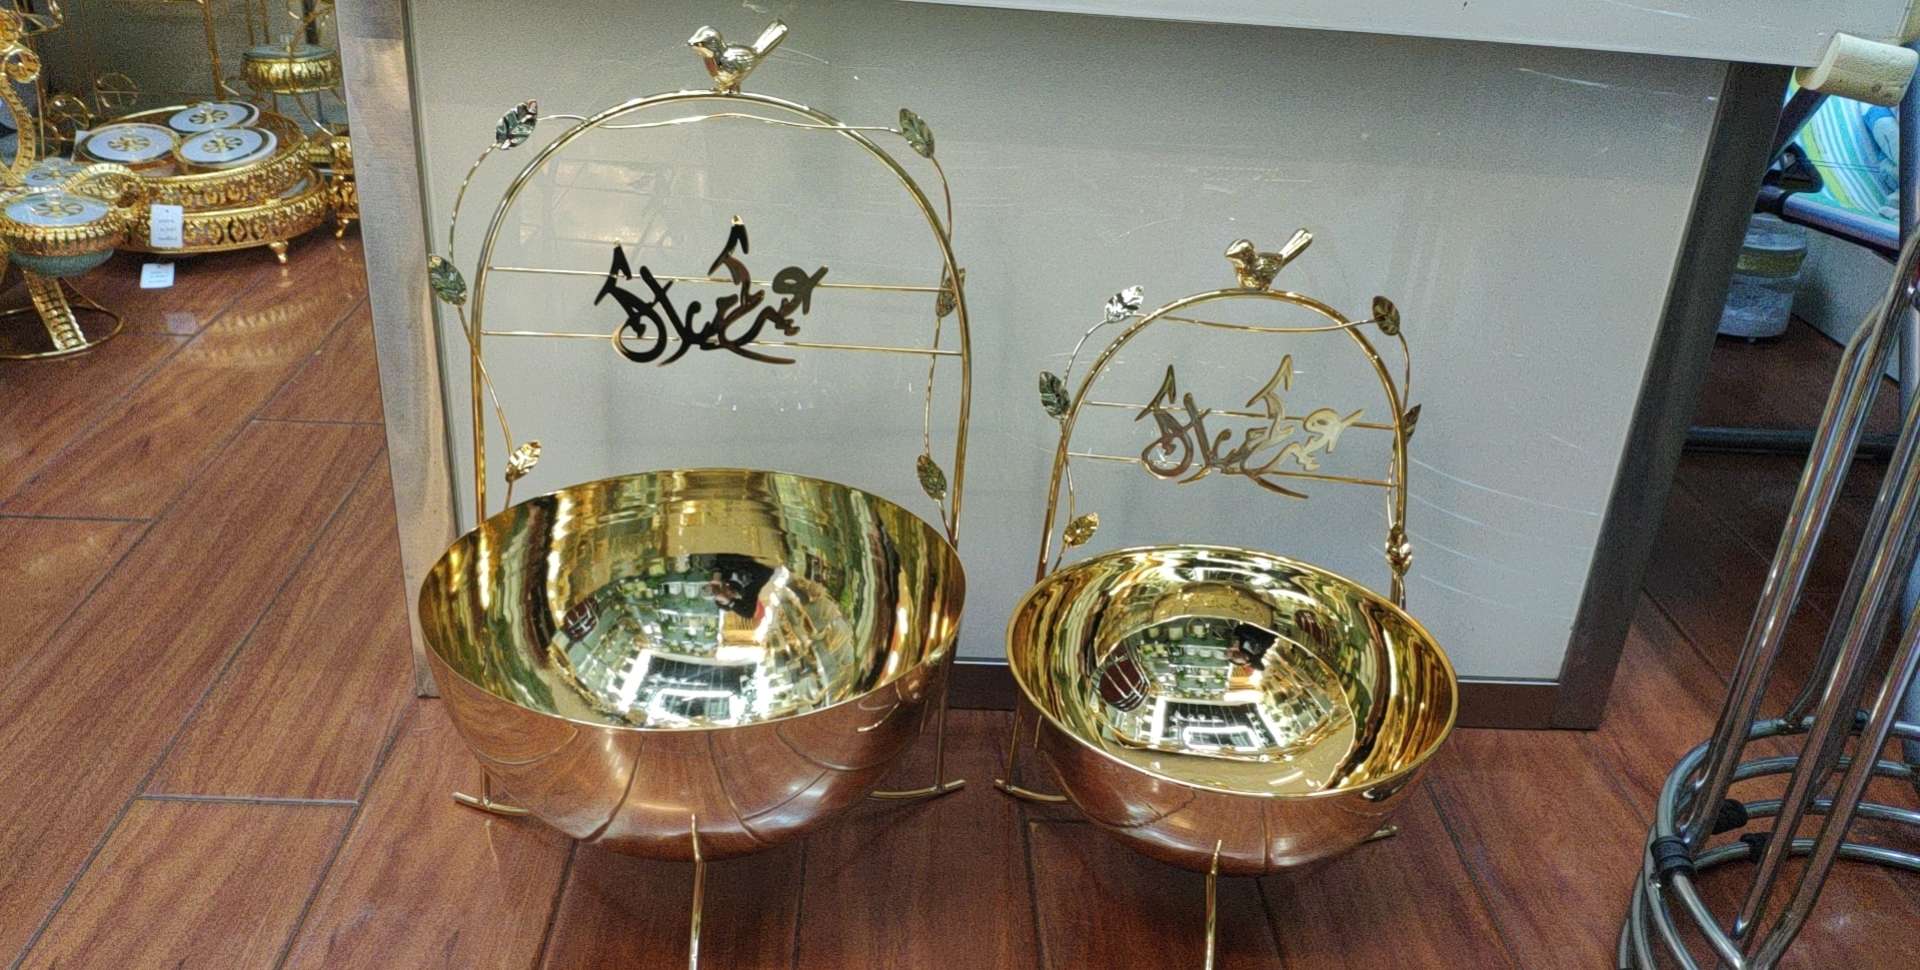 鸟巢型镀金色铁艺玻璃底托盘 欧式托盘镜子托盘餐具 家用创意日式餐盘北欧茶具套餐水果盘42图